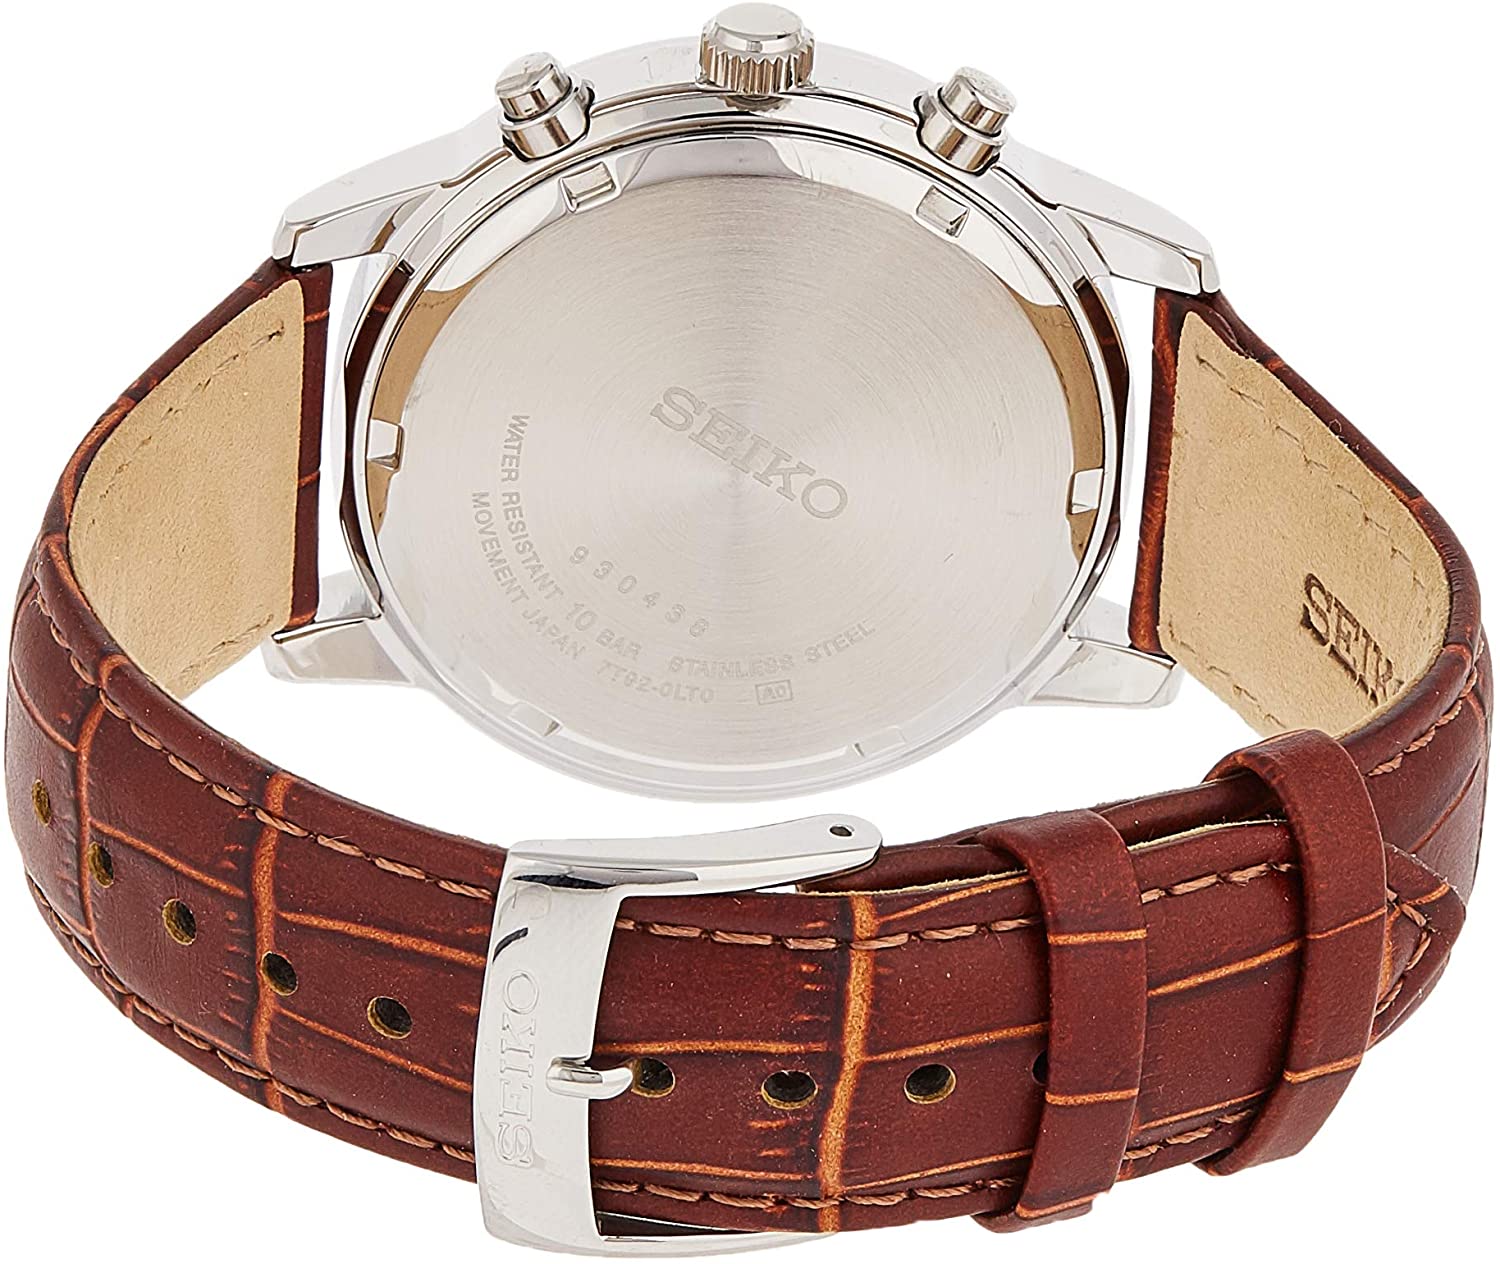 Đồng hồ Seiko cổ sẵn sàng (SEIKO SNDC31 Watch) Seiko SNDC31 Classic  Stainless Steel Chronograph Watch with Brown Leather Band [Hộp & Sách hướng  dẫn của Nhà sản xuất + Người bán